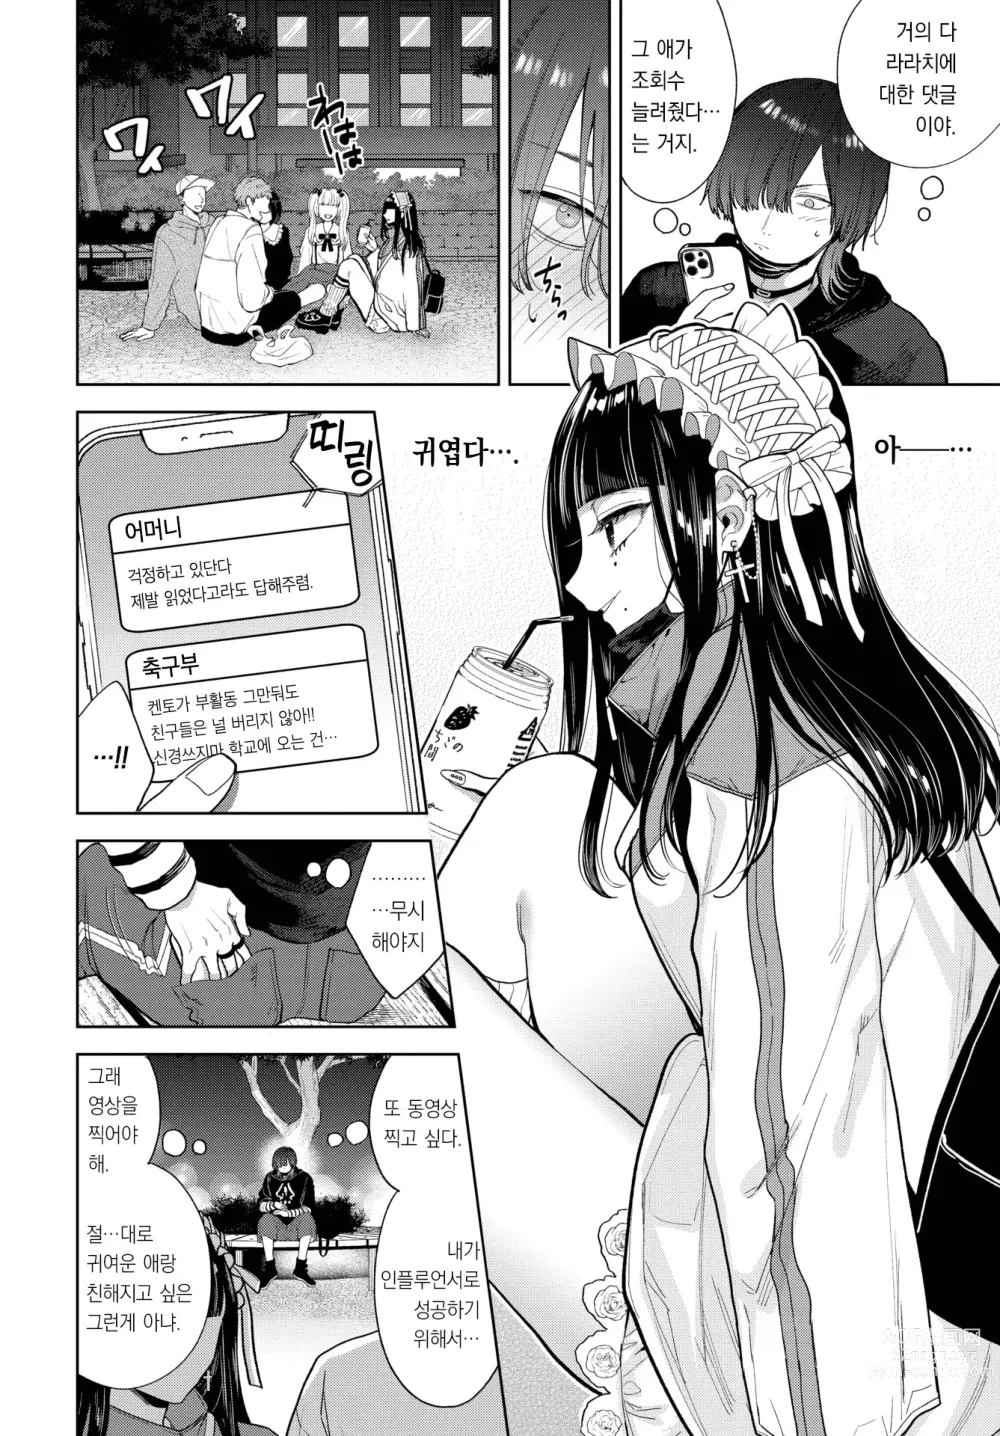 Page 5 of manga 사랑하는 라라치